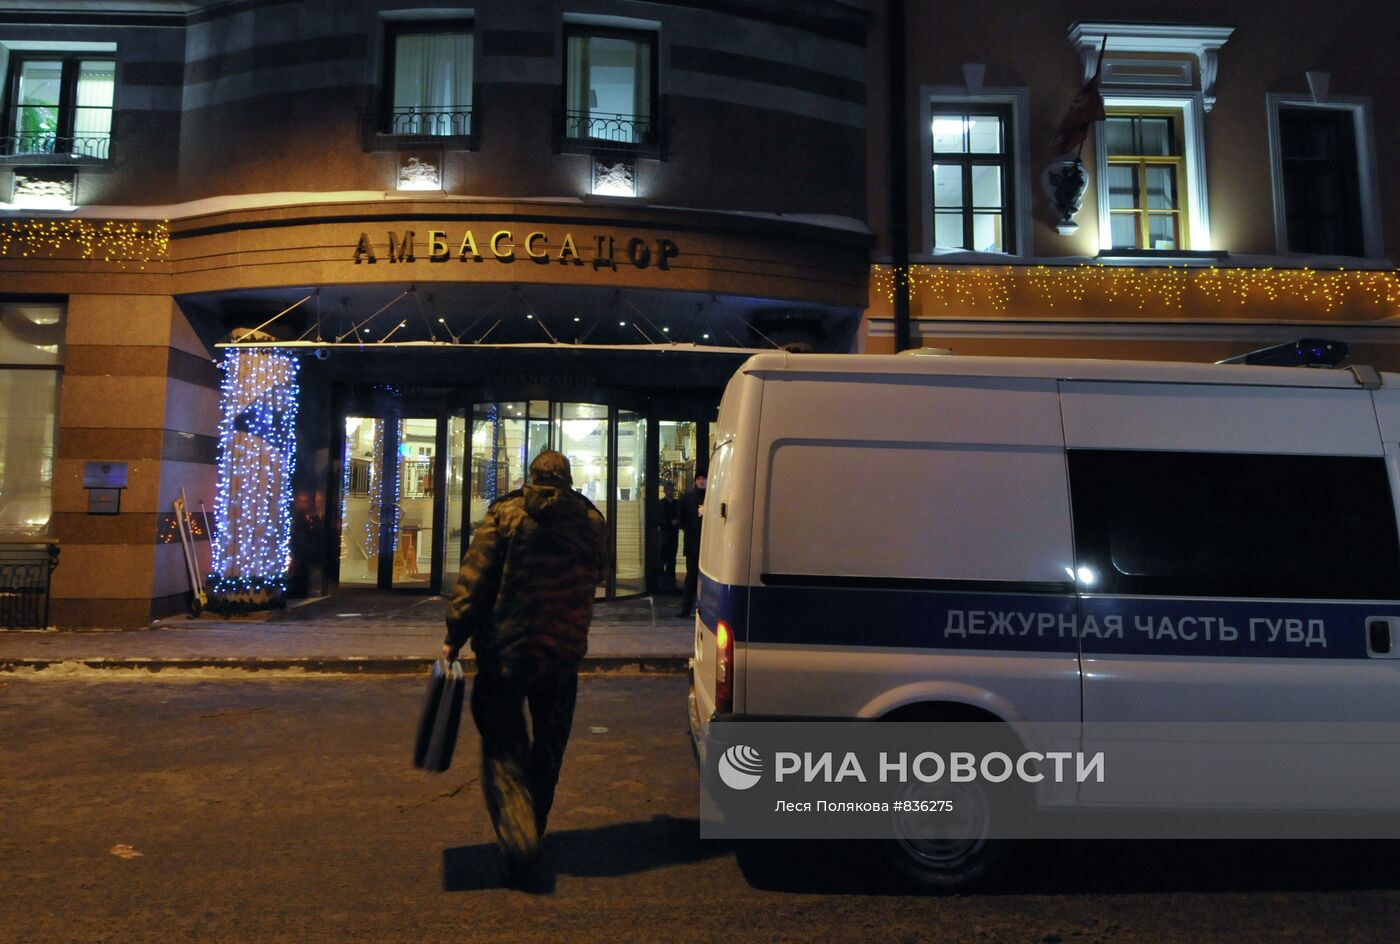 Гостиница "Амбассадор" в Санкт-Петербурге